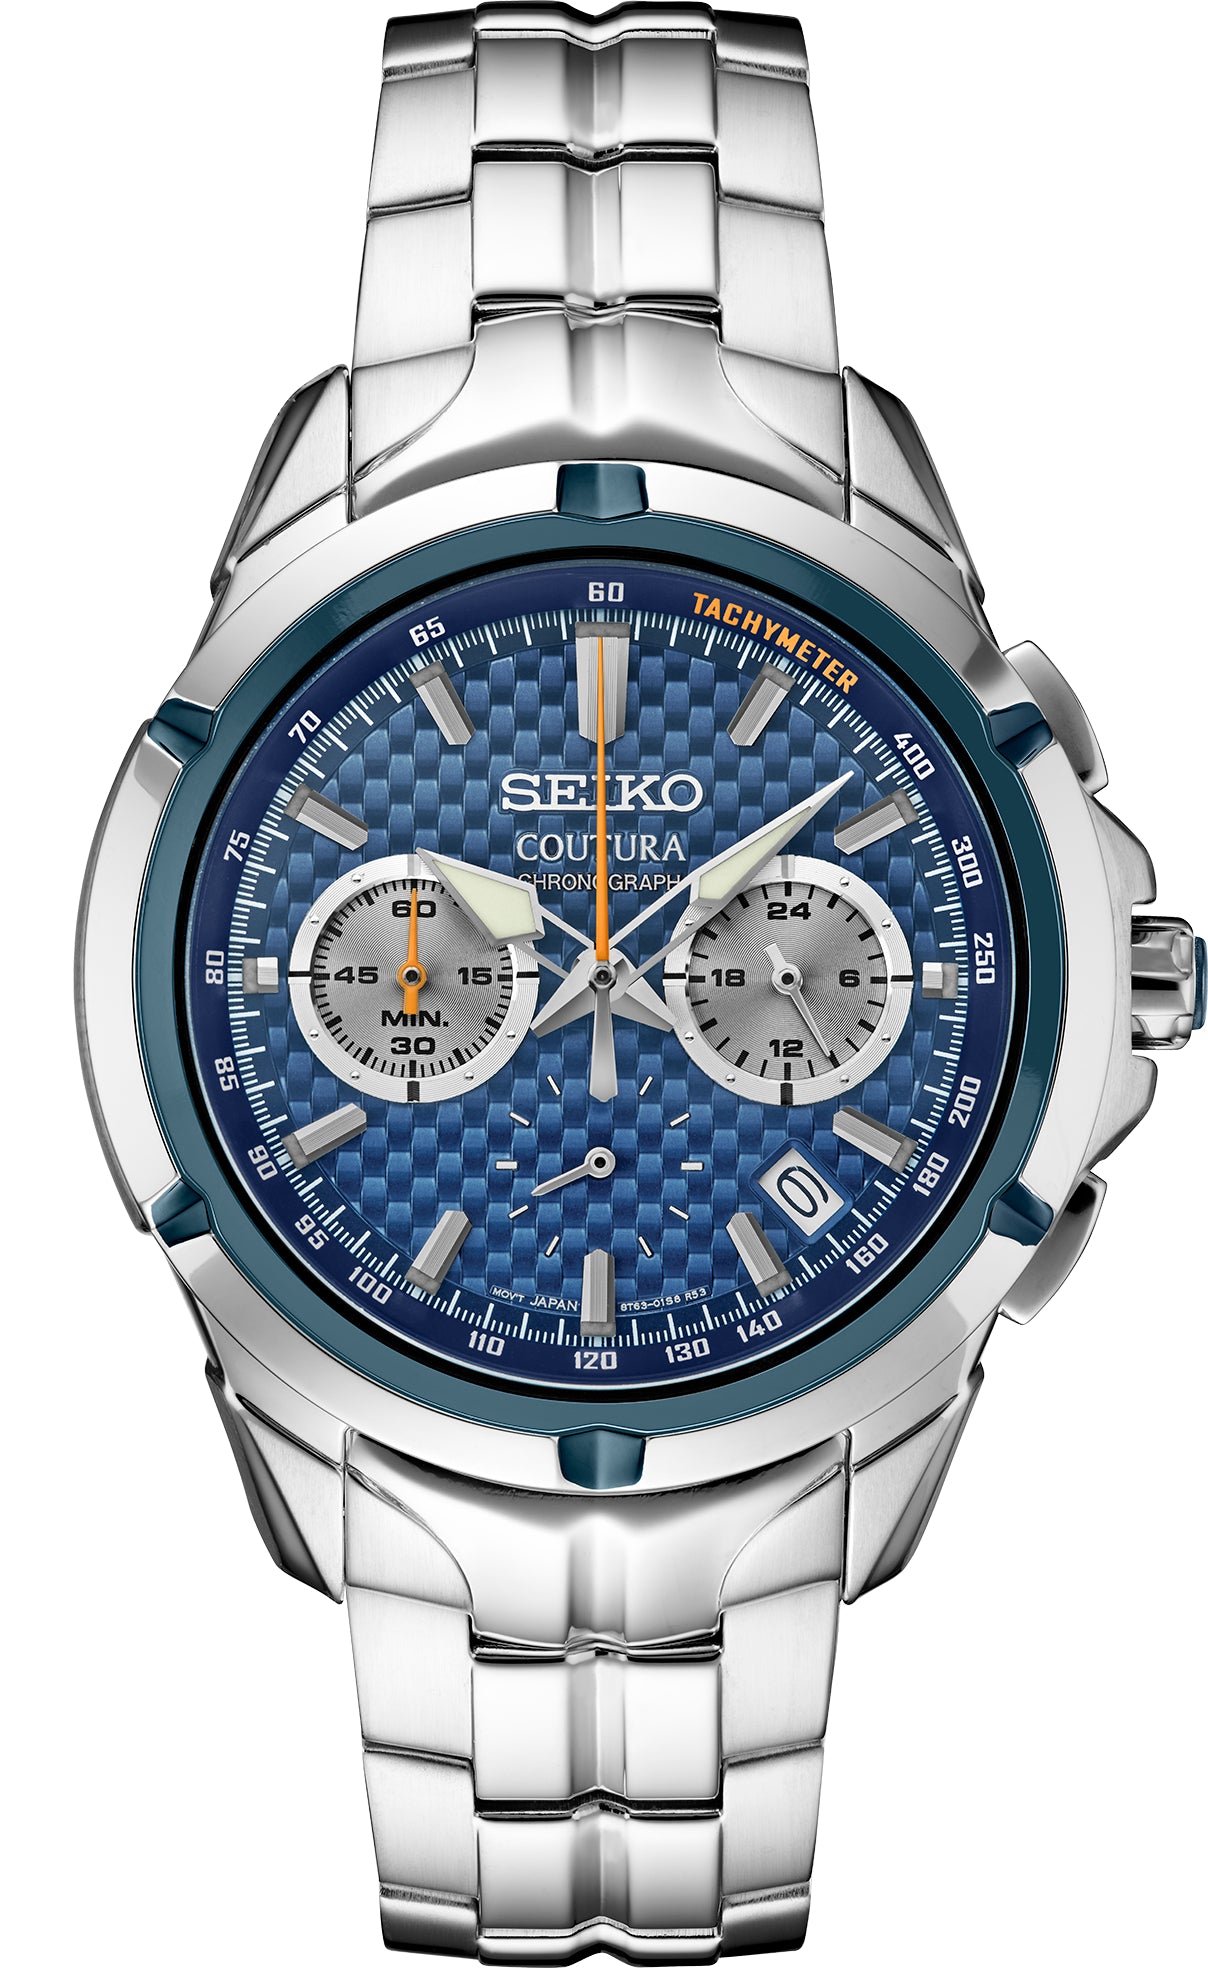 Gts Seiko SSB431 Coutura SS Quartz Chronograph Blue Dial Watch